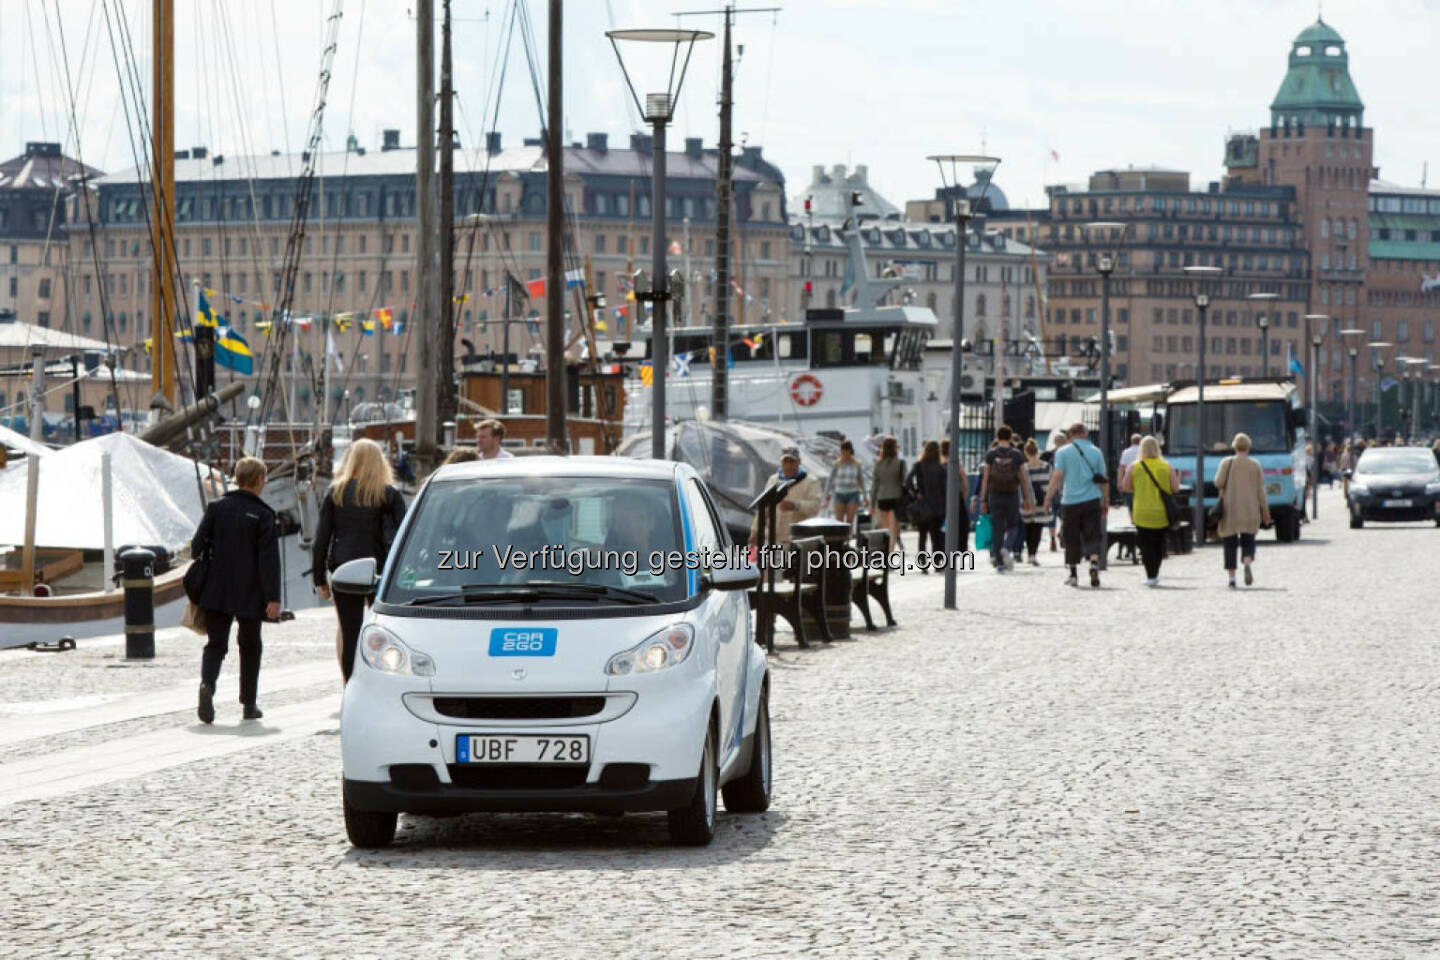 car2go startet in Stockholm und ab heute Smartphone-basiertes Mieten an allen Standorten möglich. (C) Markus Heimbach, Hamburg